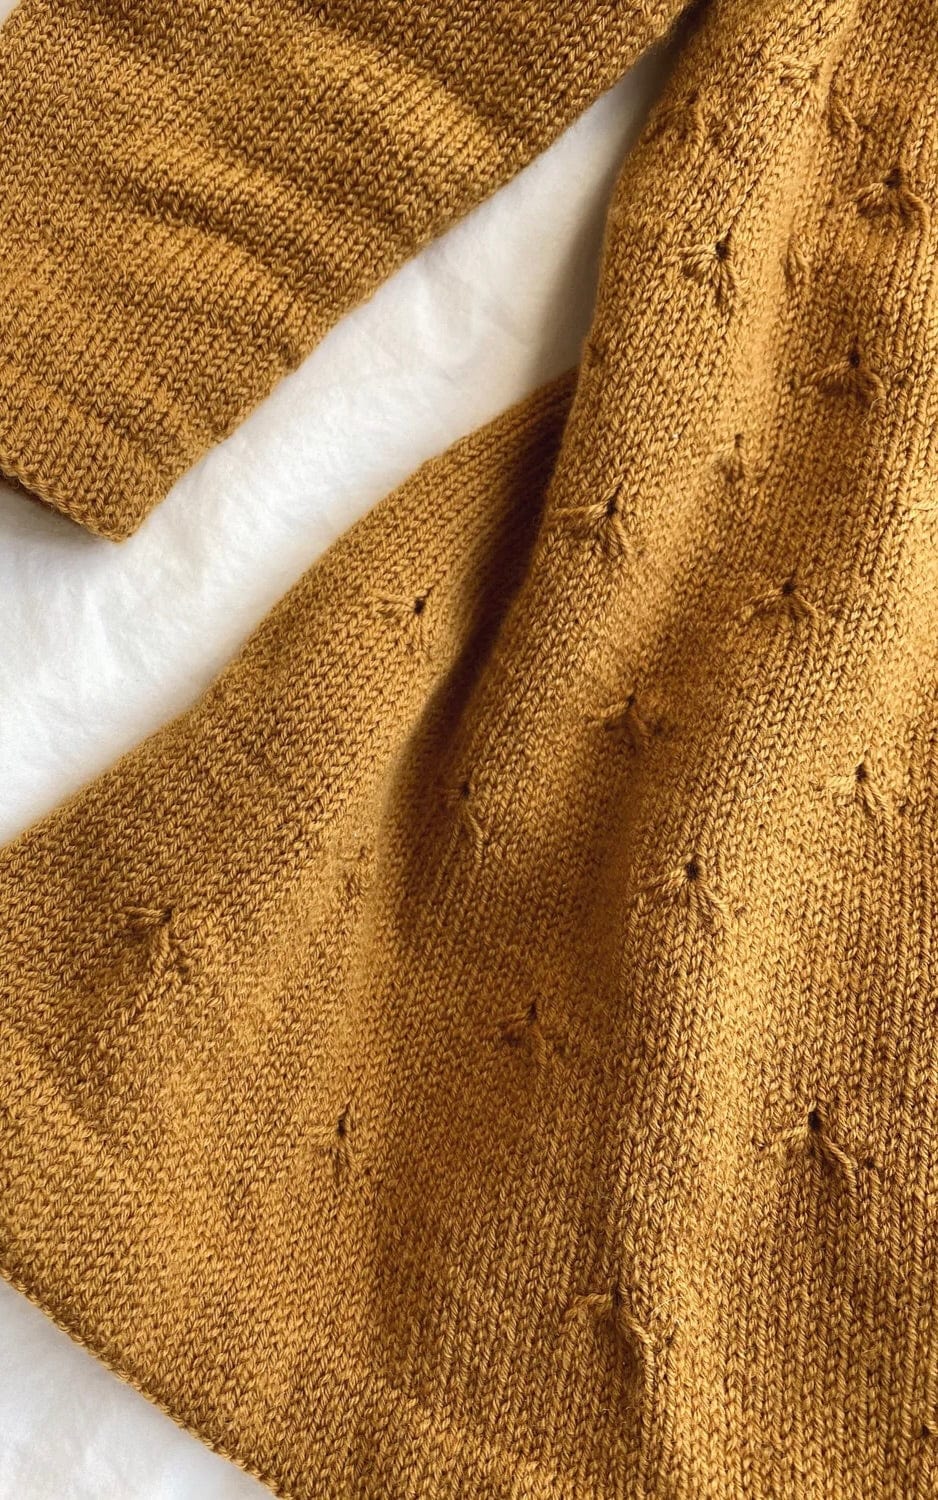 Löwenzahn Kleid - SUNDAY - Strickset von PETITE KNIT jetzt online kaufen bei OONIQUE